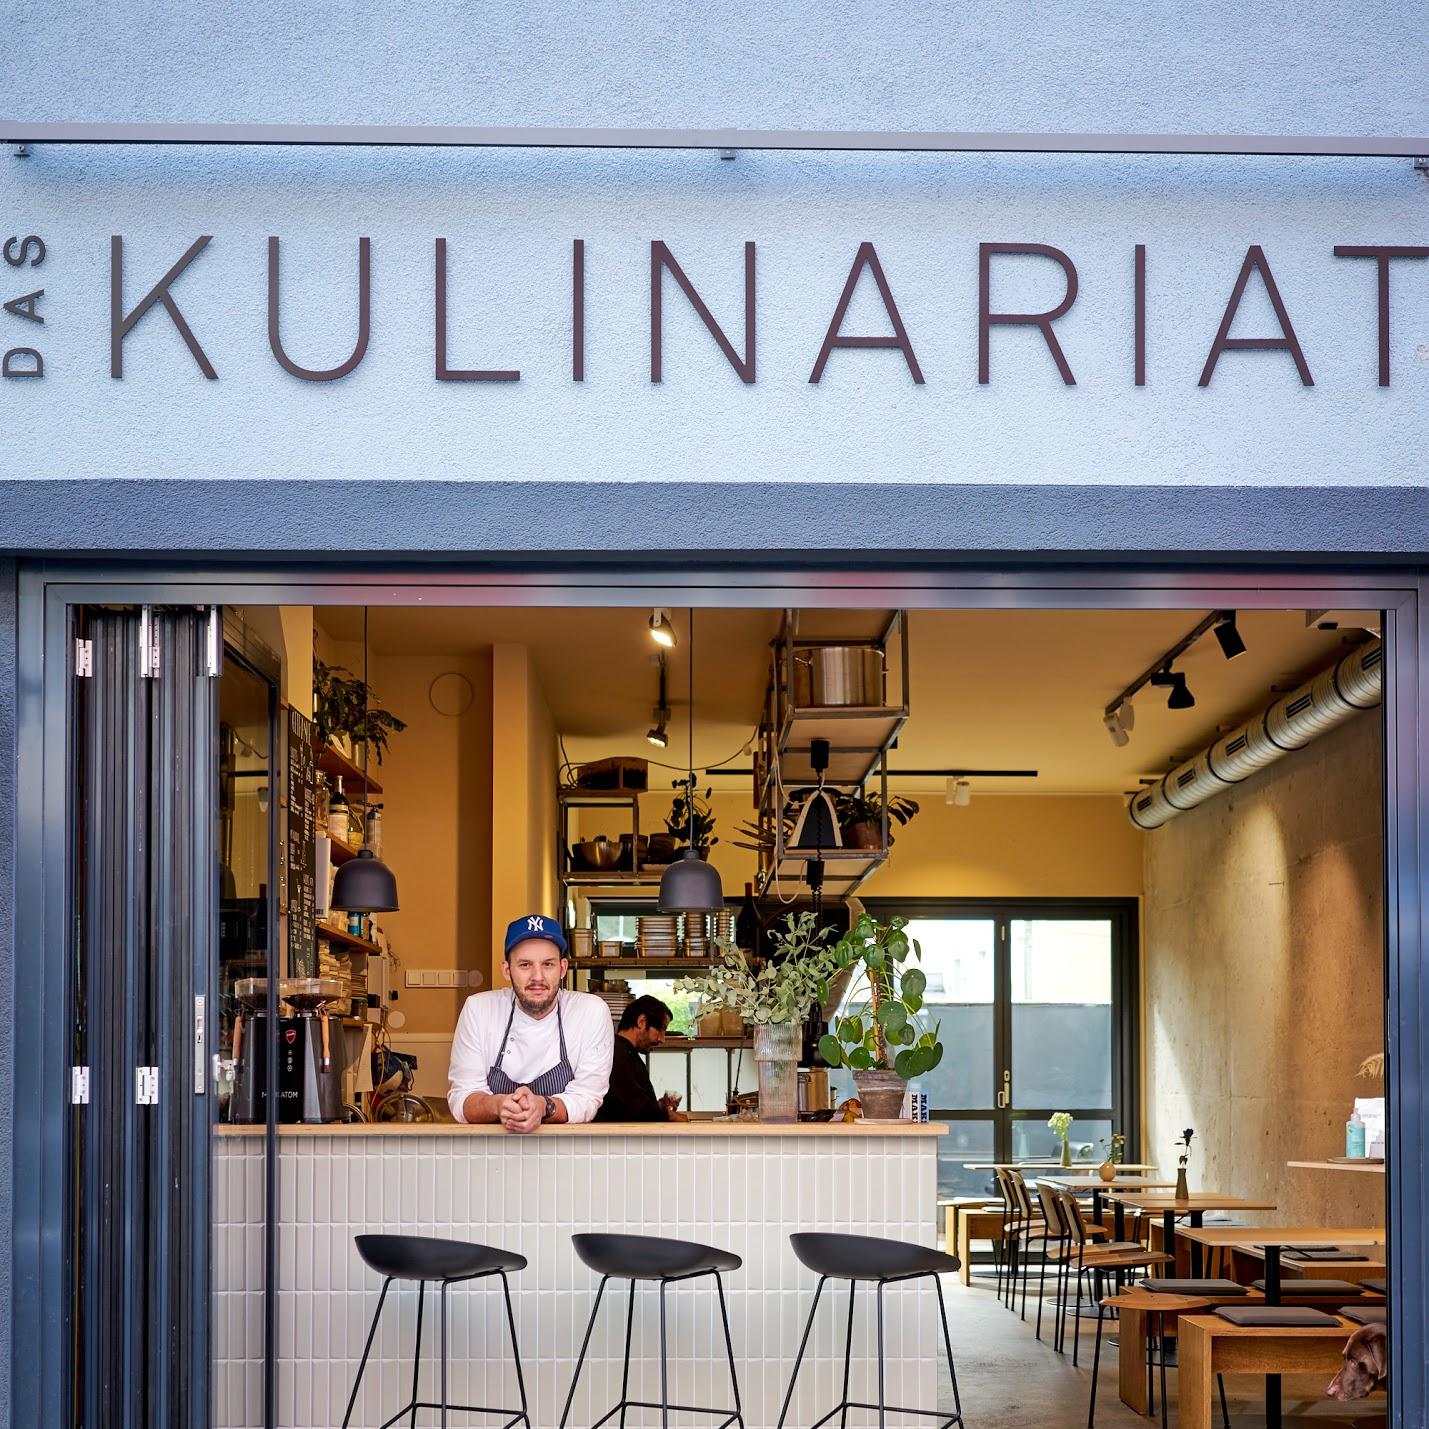 Restaurant "Das Kulinariat" in München